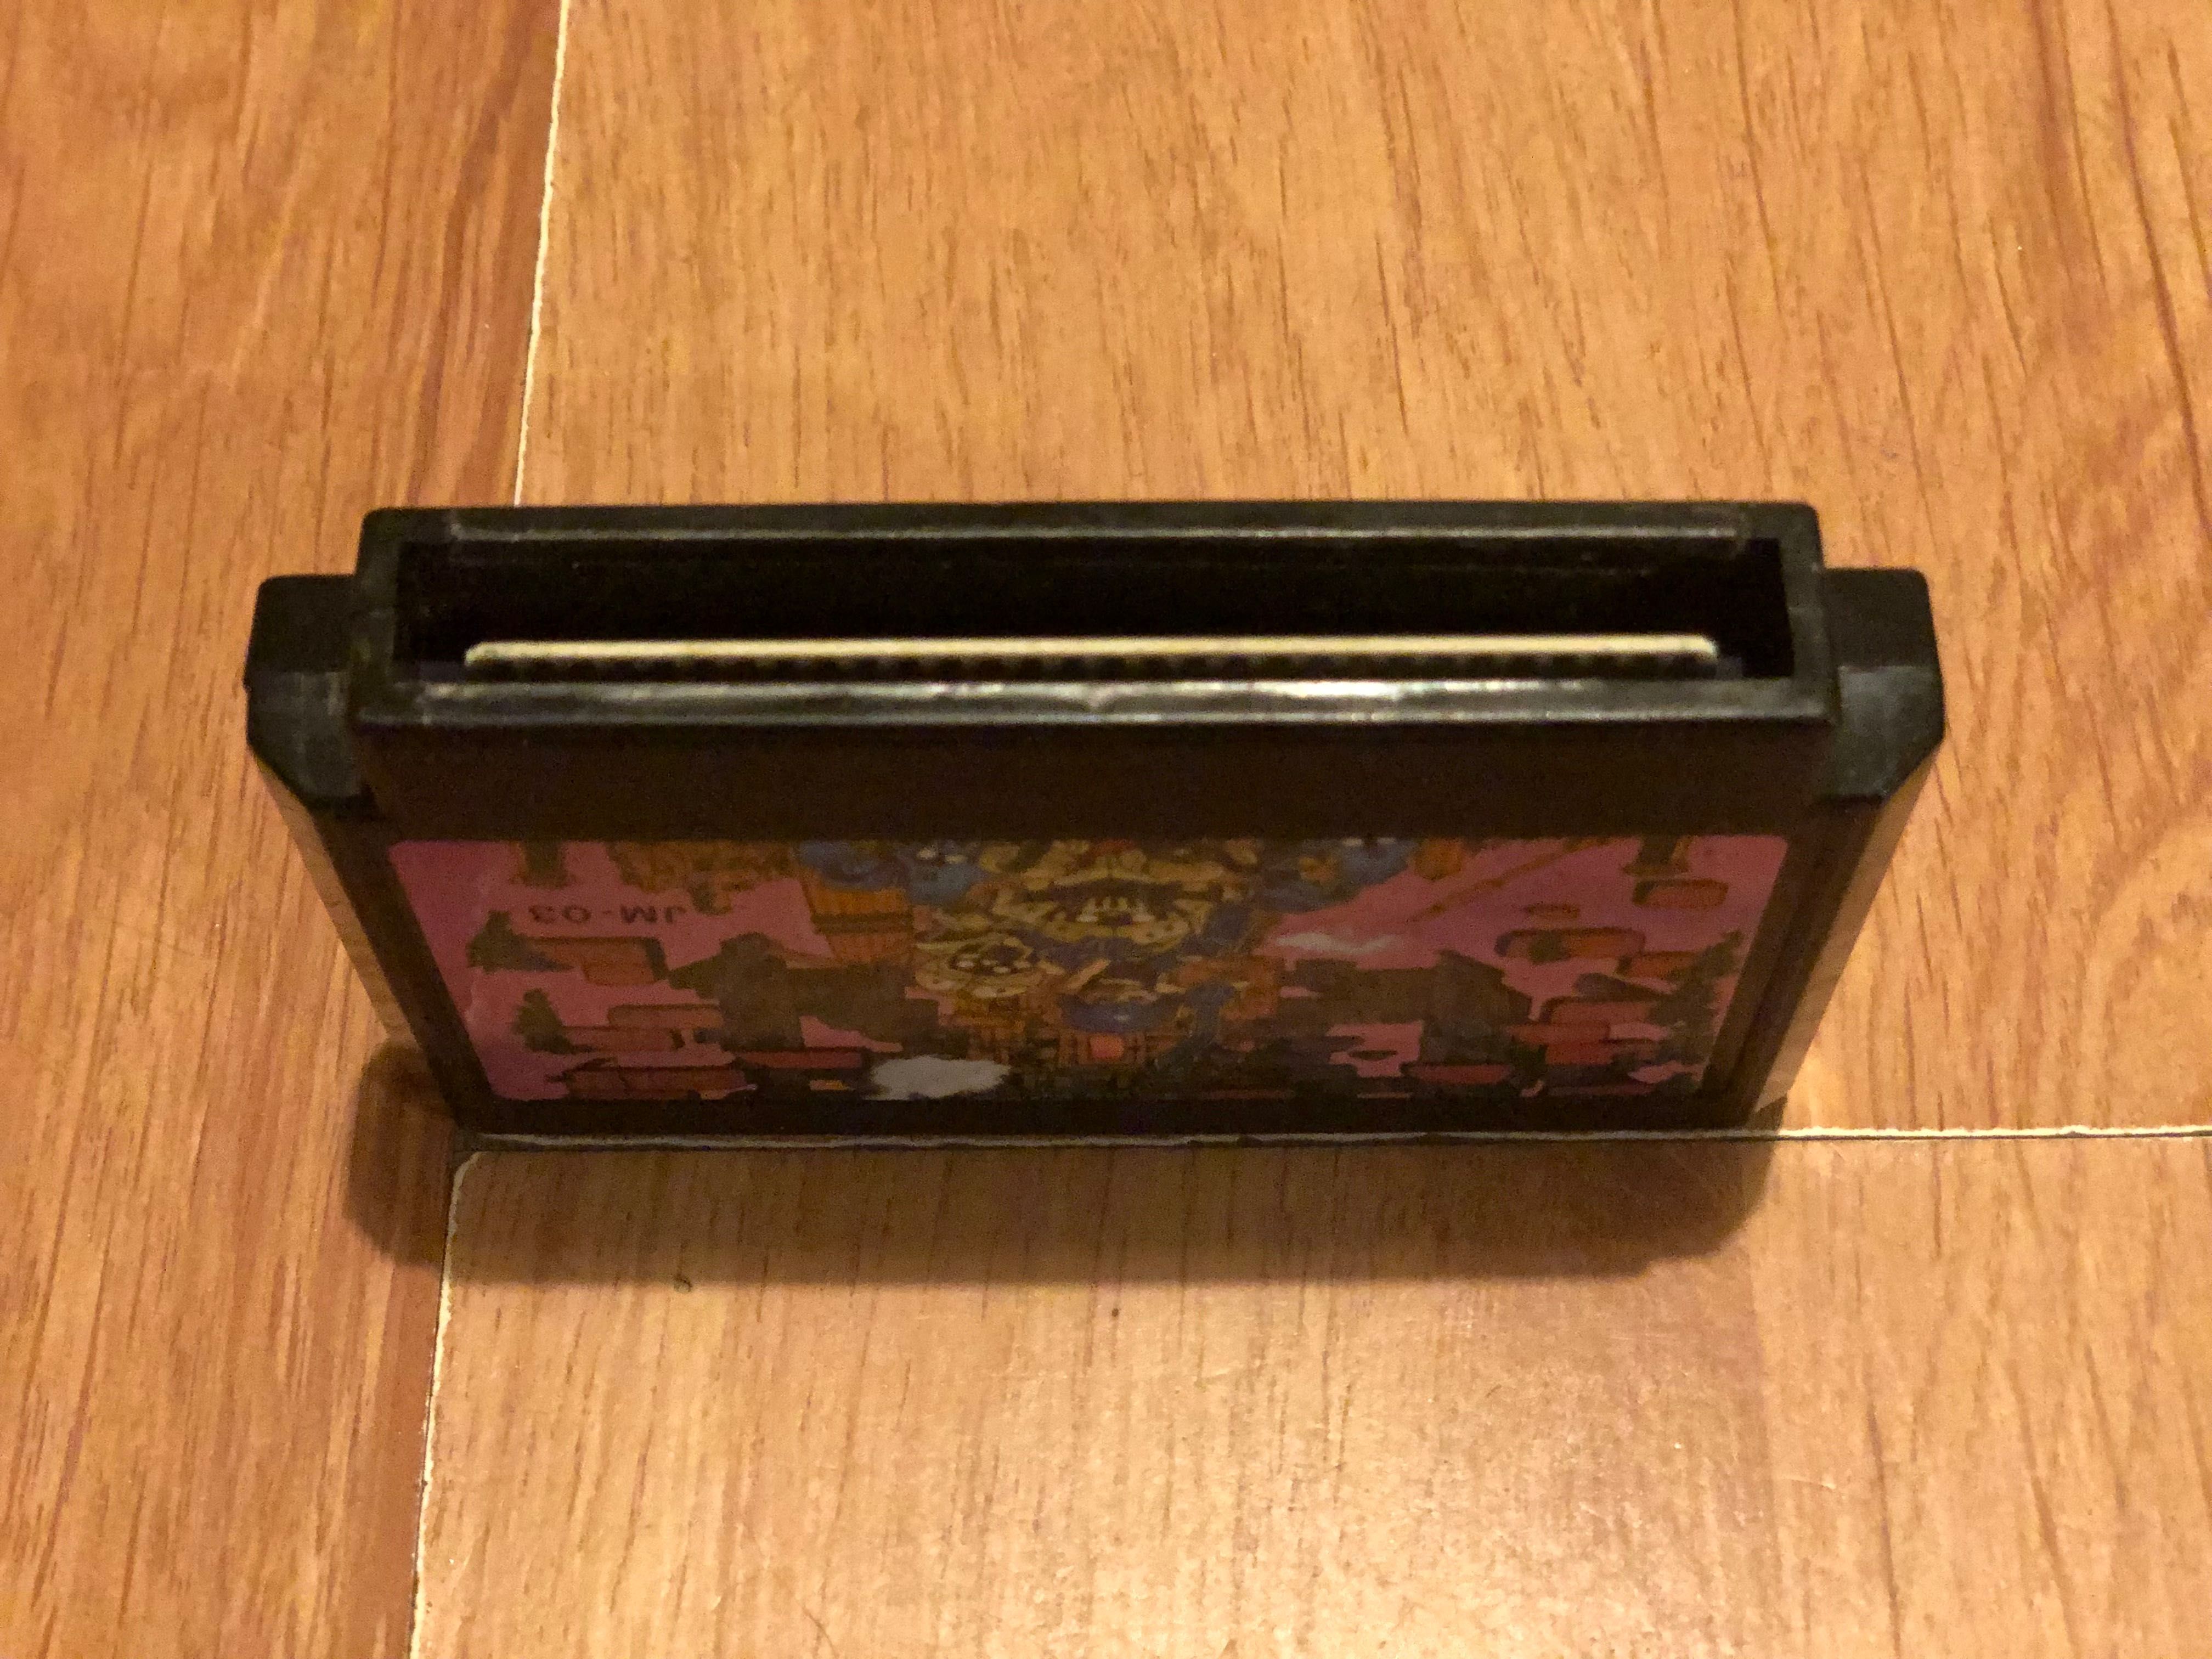 Power Blazer, Unikat, Famicom